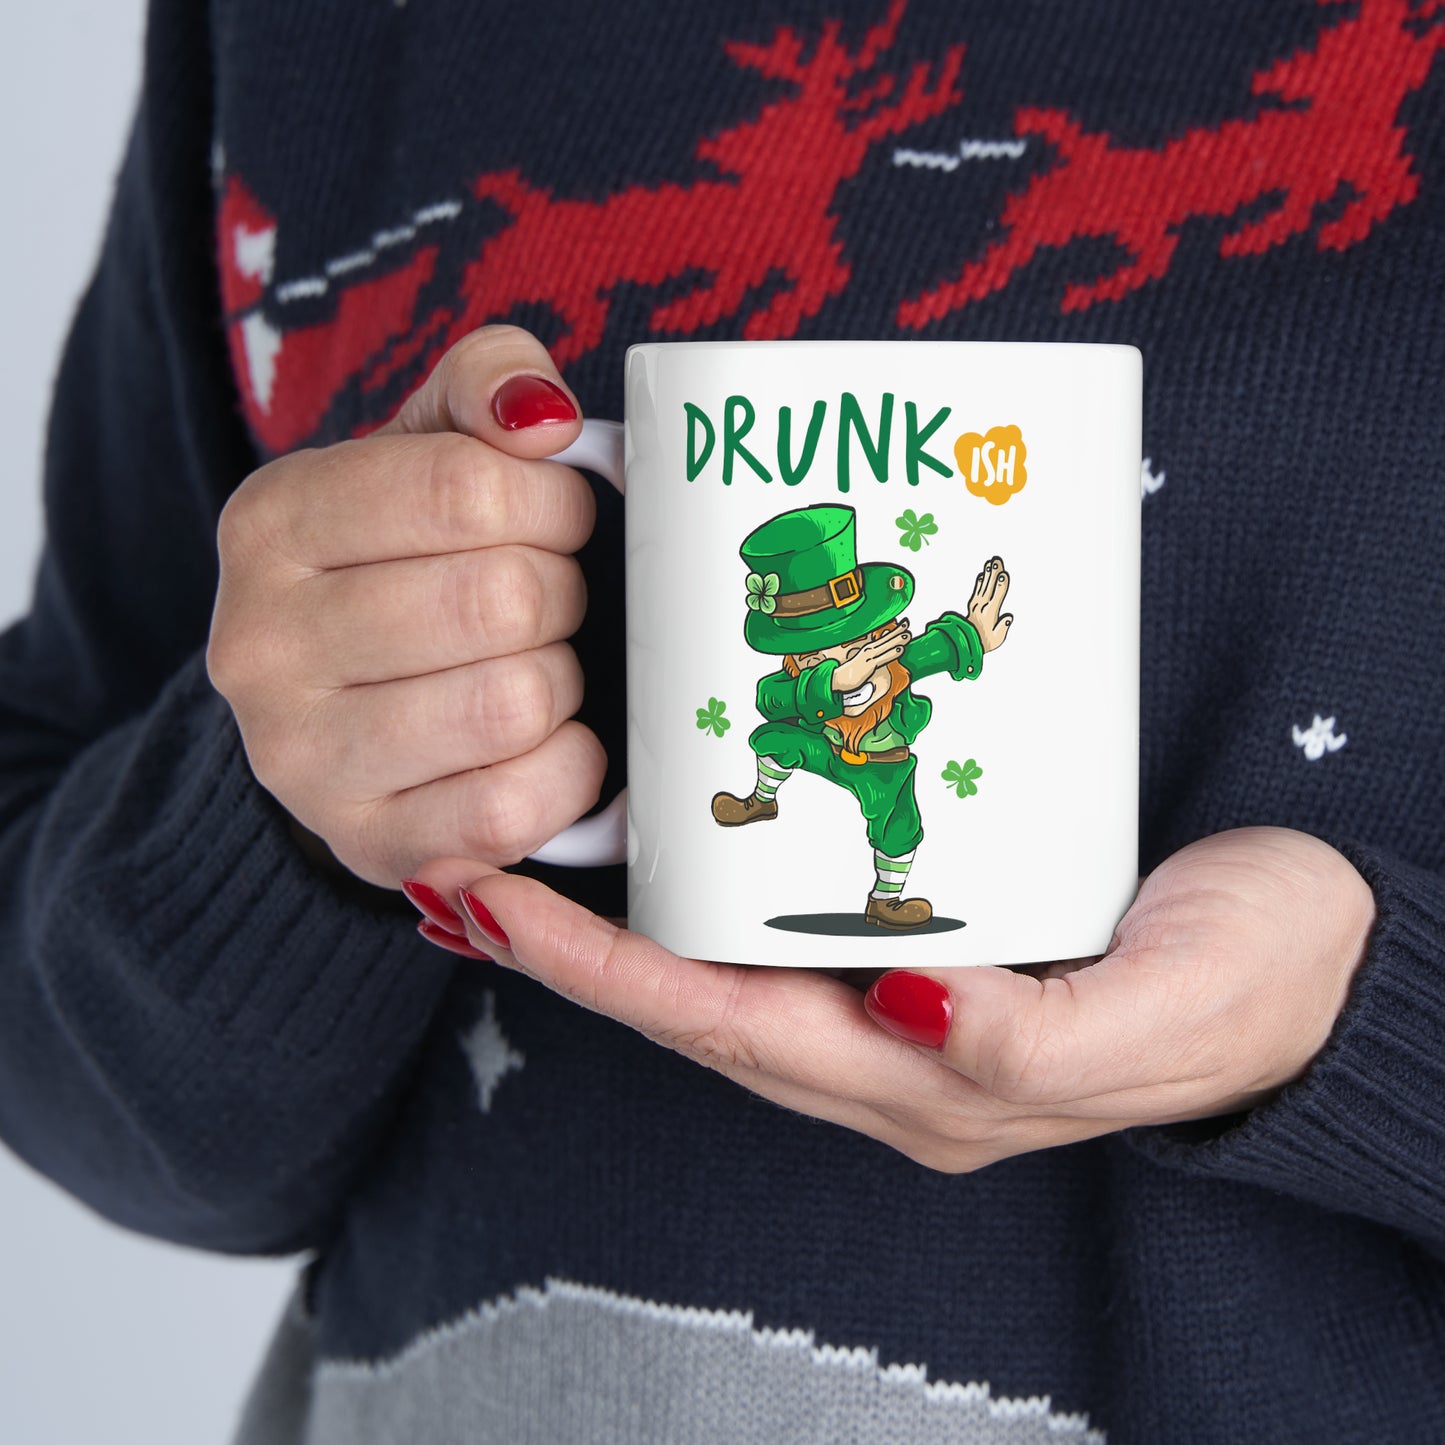 St Patrick's Day Mug  Drunk ish Ceramic Mug 11oz